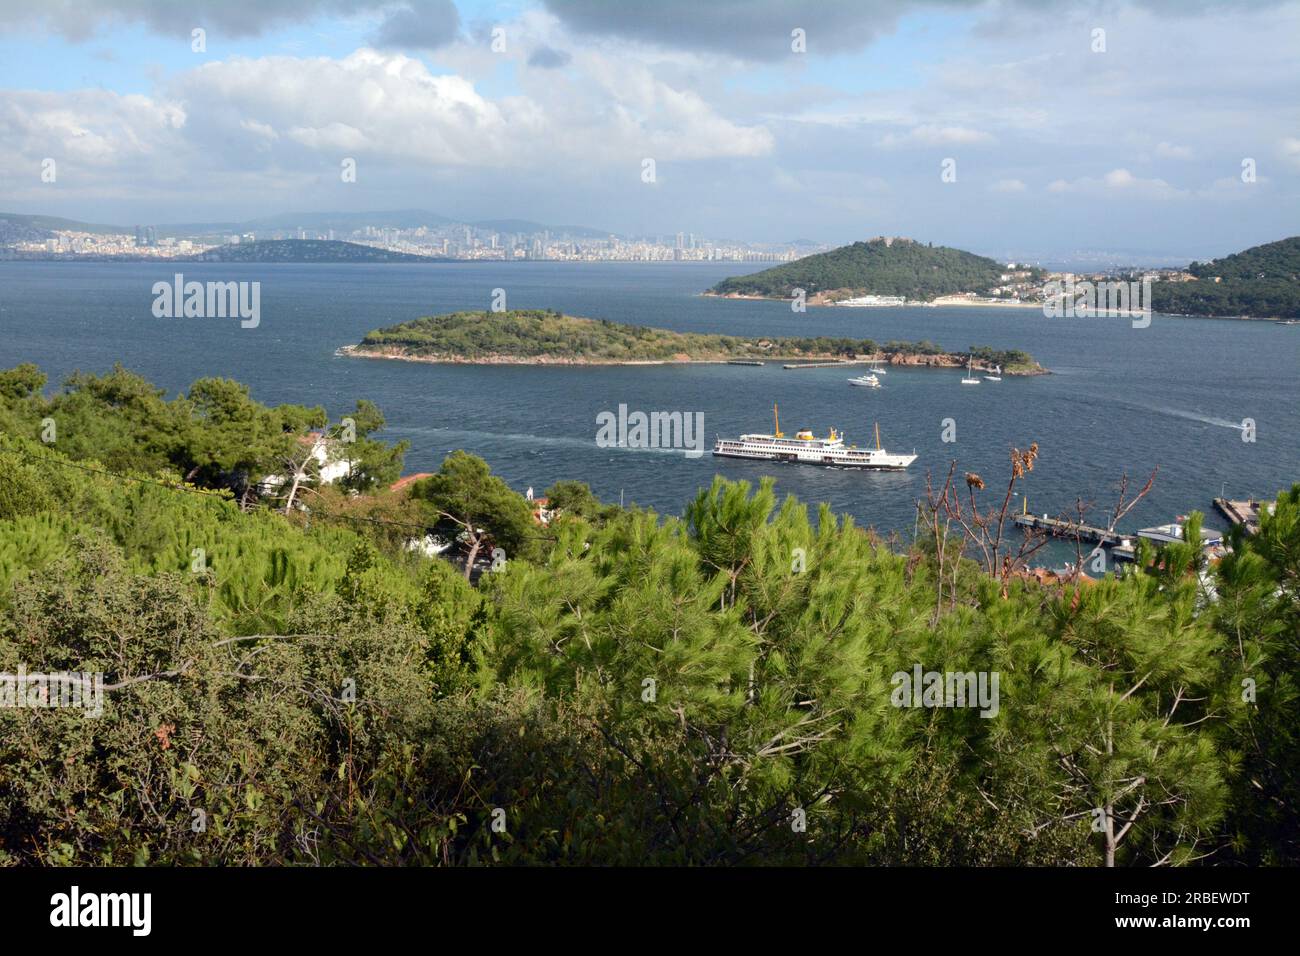 Die Fähre von Istanbul, die auf der Insel Burgazada ankommt, in der Kette der Prinzeninseln (Adalar), im Meer von Marmara, Türkei, Turkiye. Stockfoto